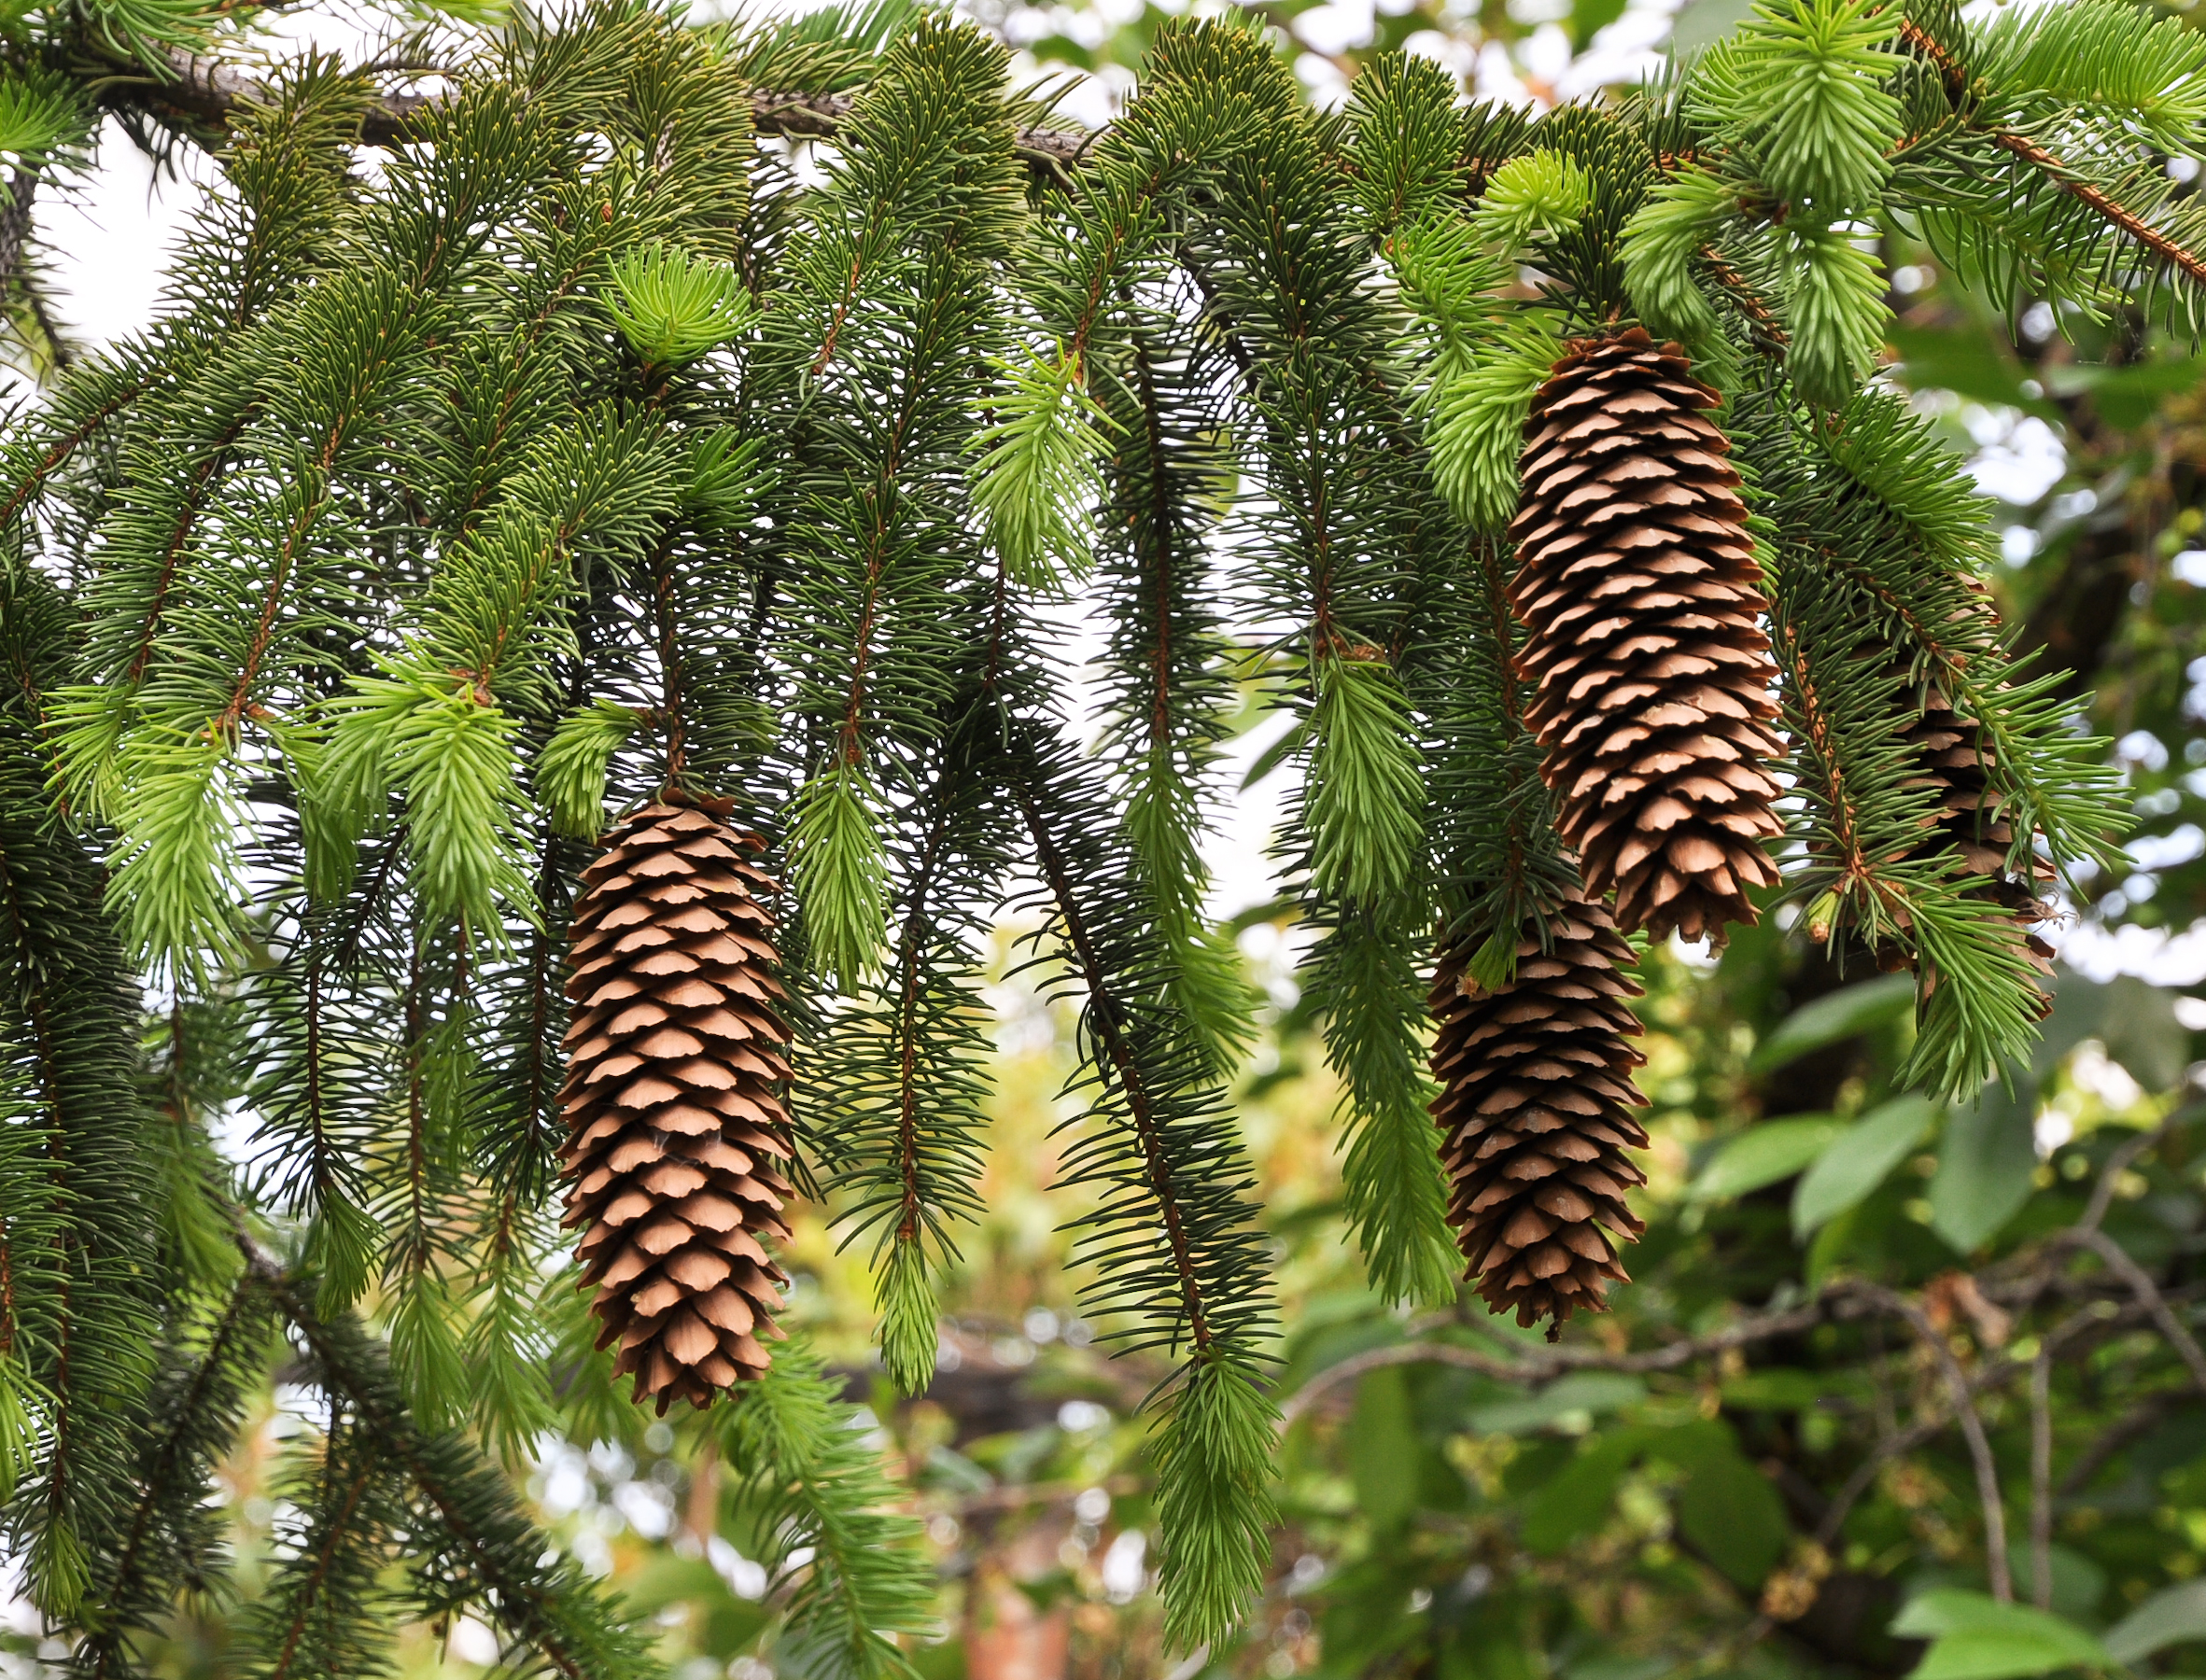 Norway Spruce cones (Picea abies)